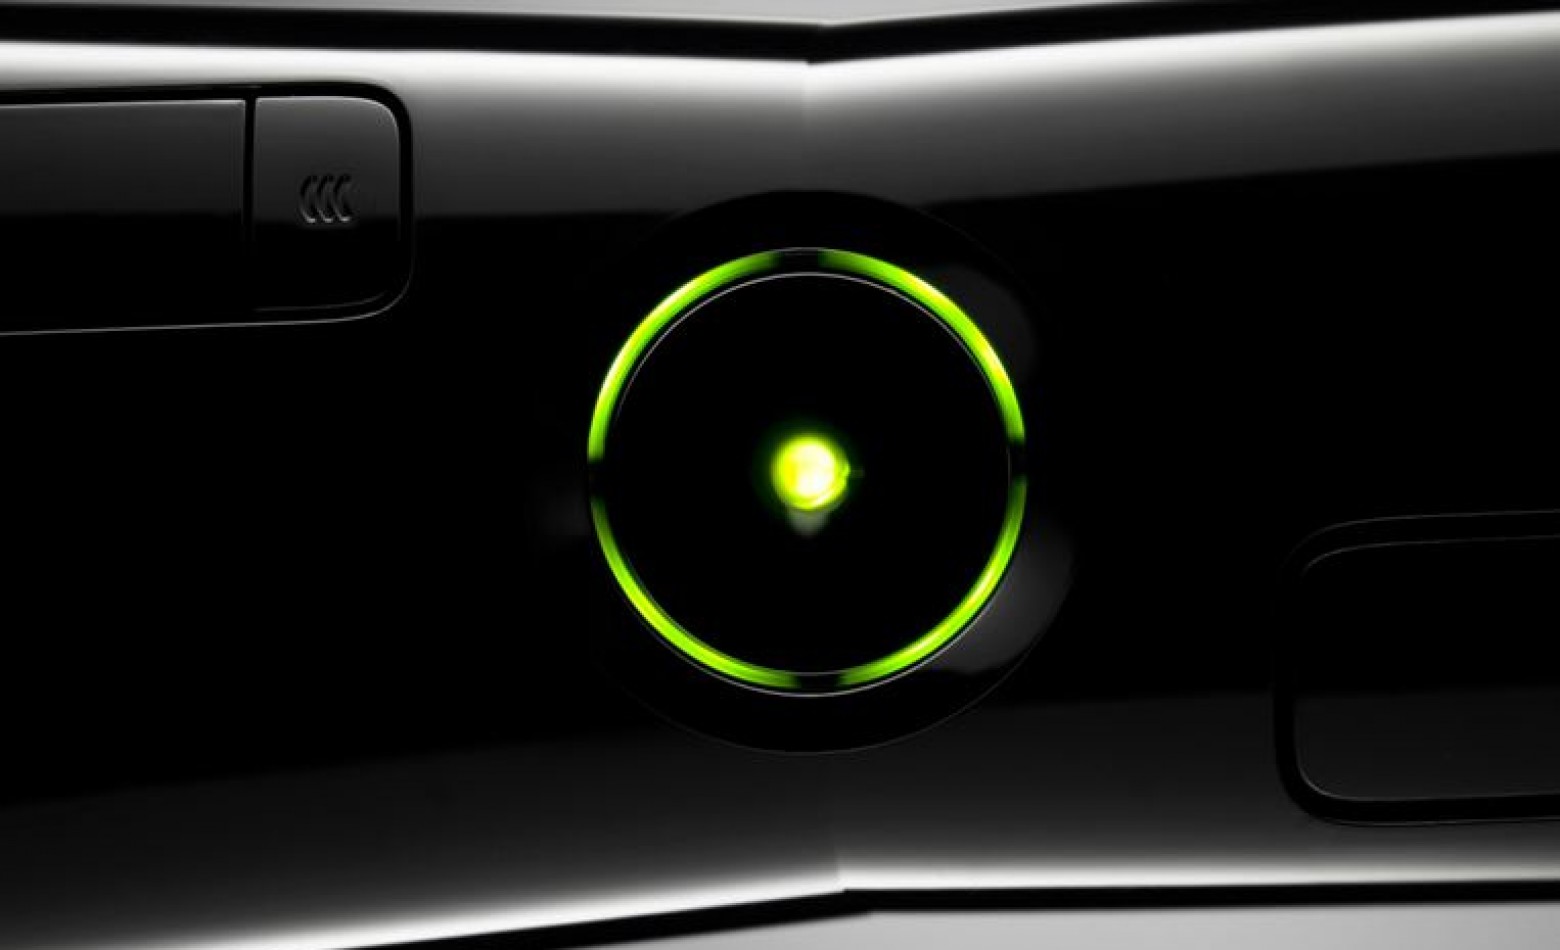 Xbox LIVE fica fora do ar após suposto ataque hacker